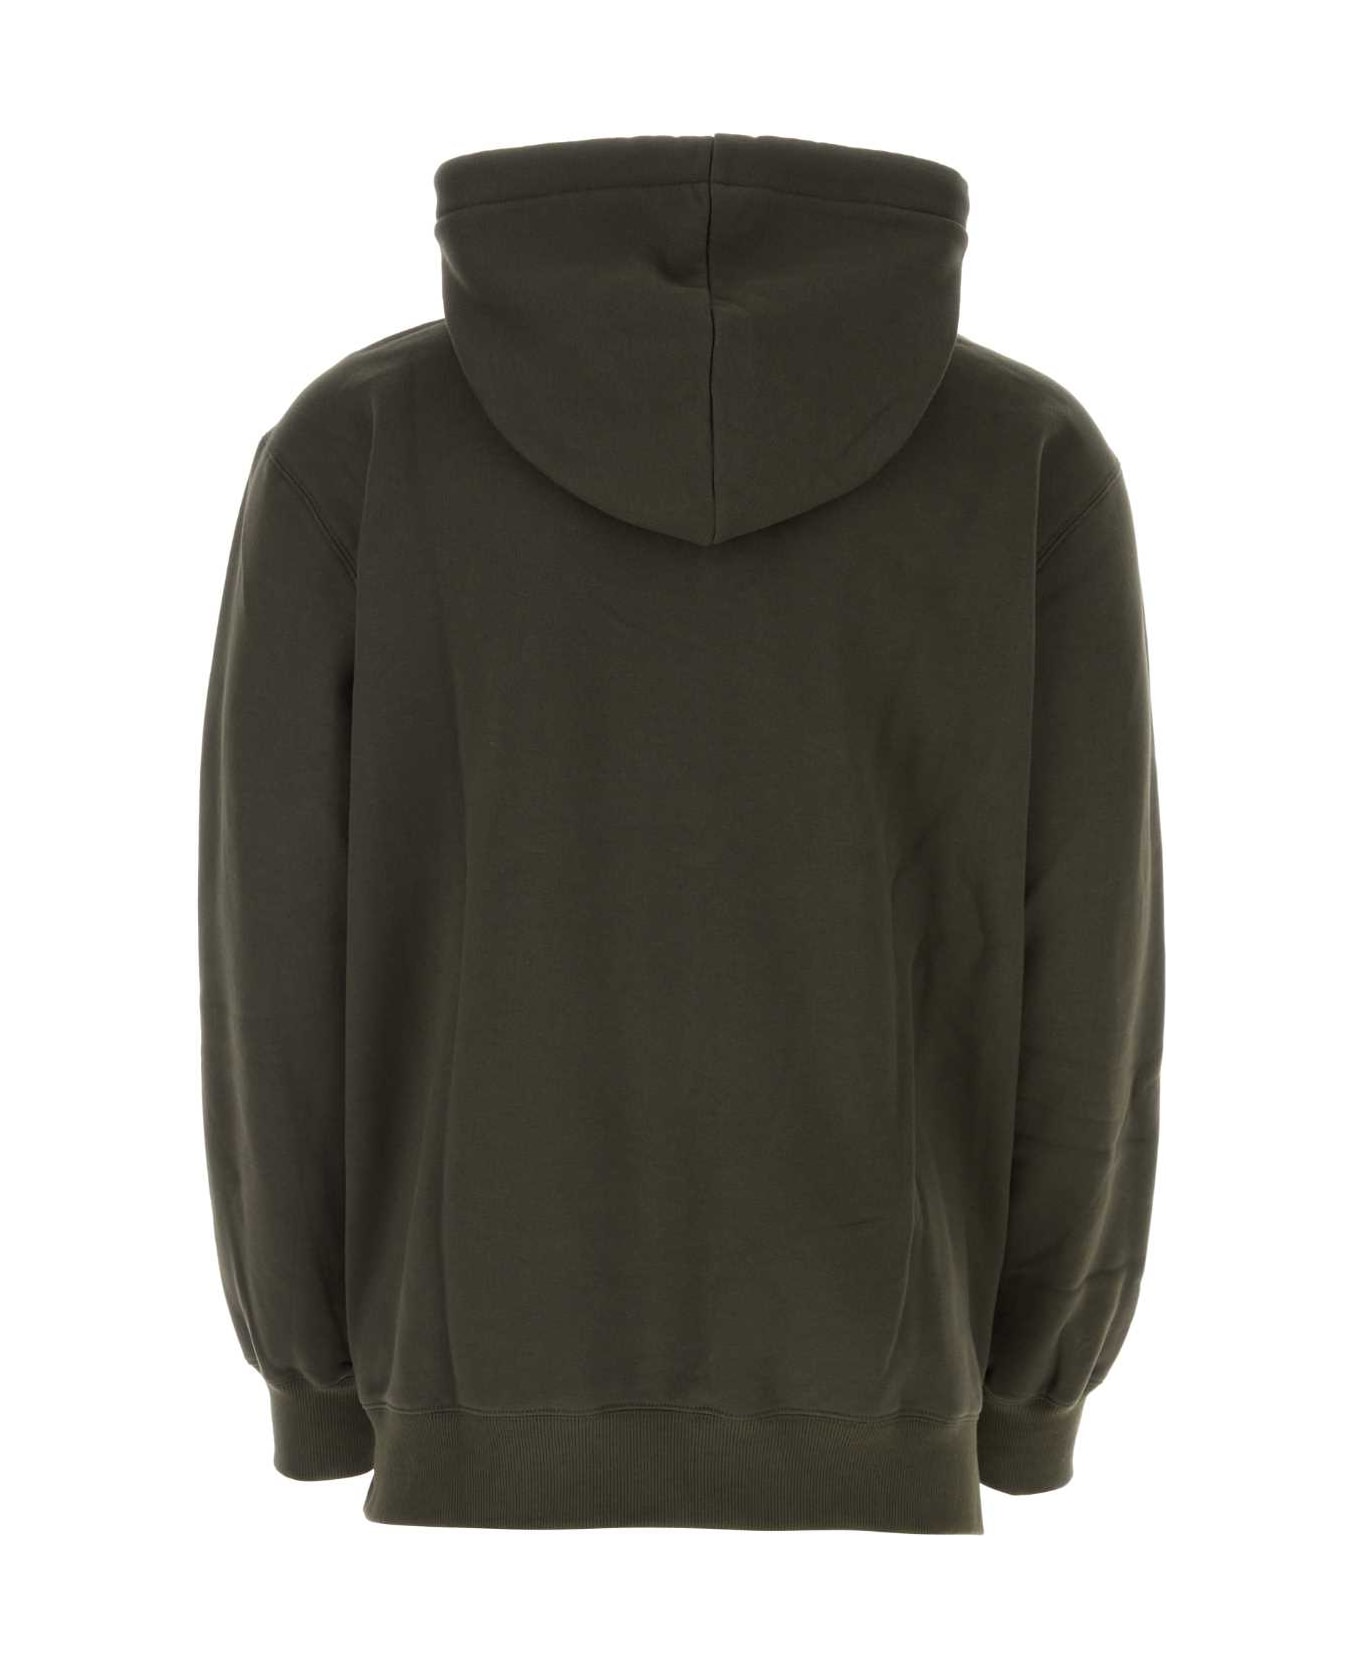 Lanvin Dark Green Cotton Oversize Sweatshirt - LODEN